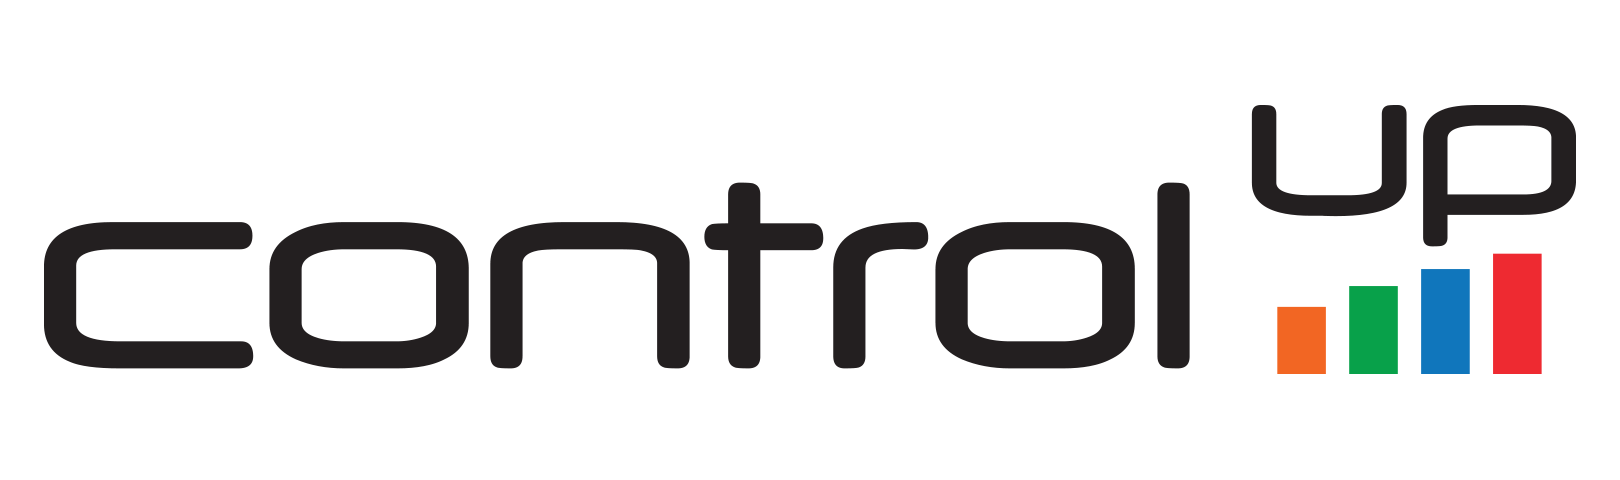 logo controlup